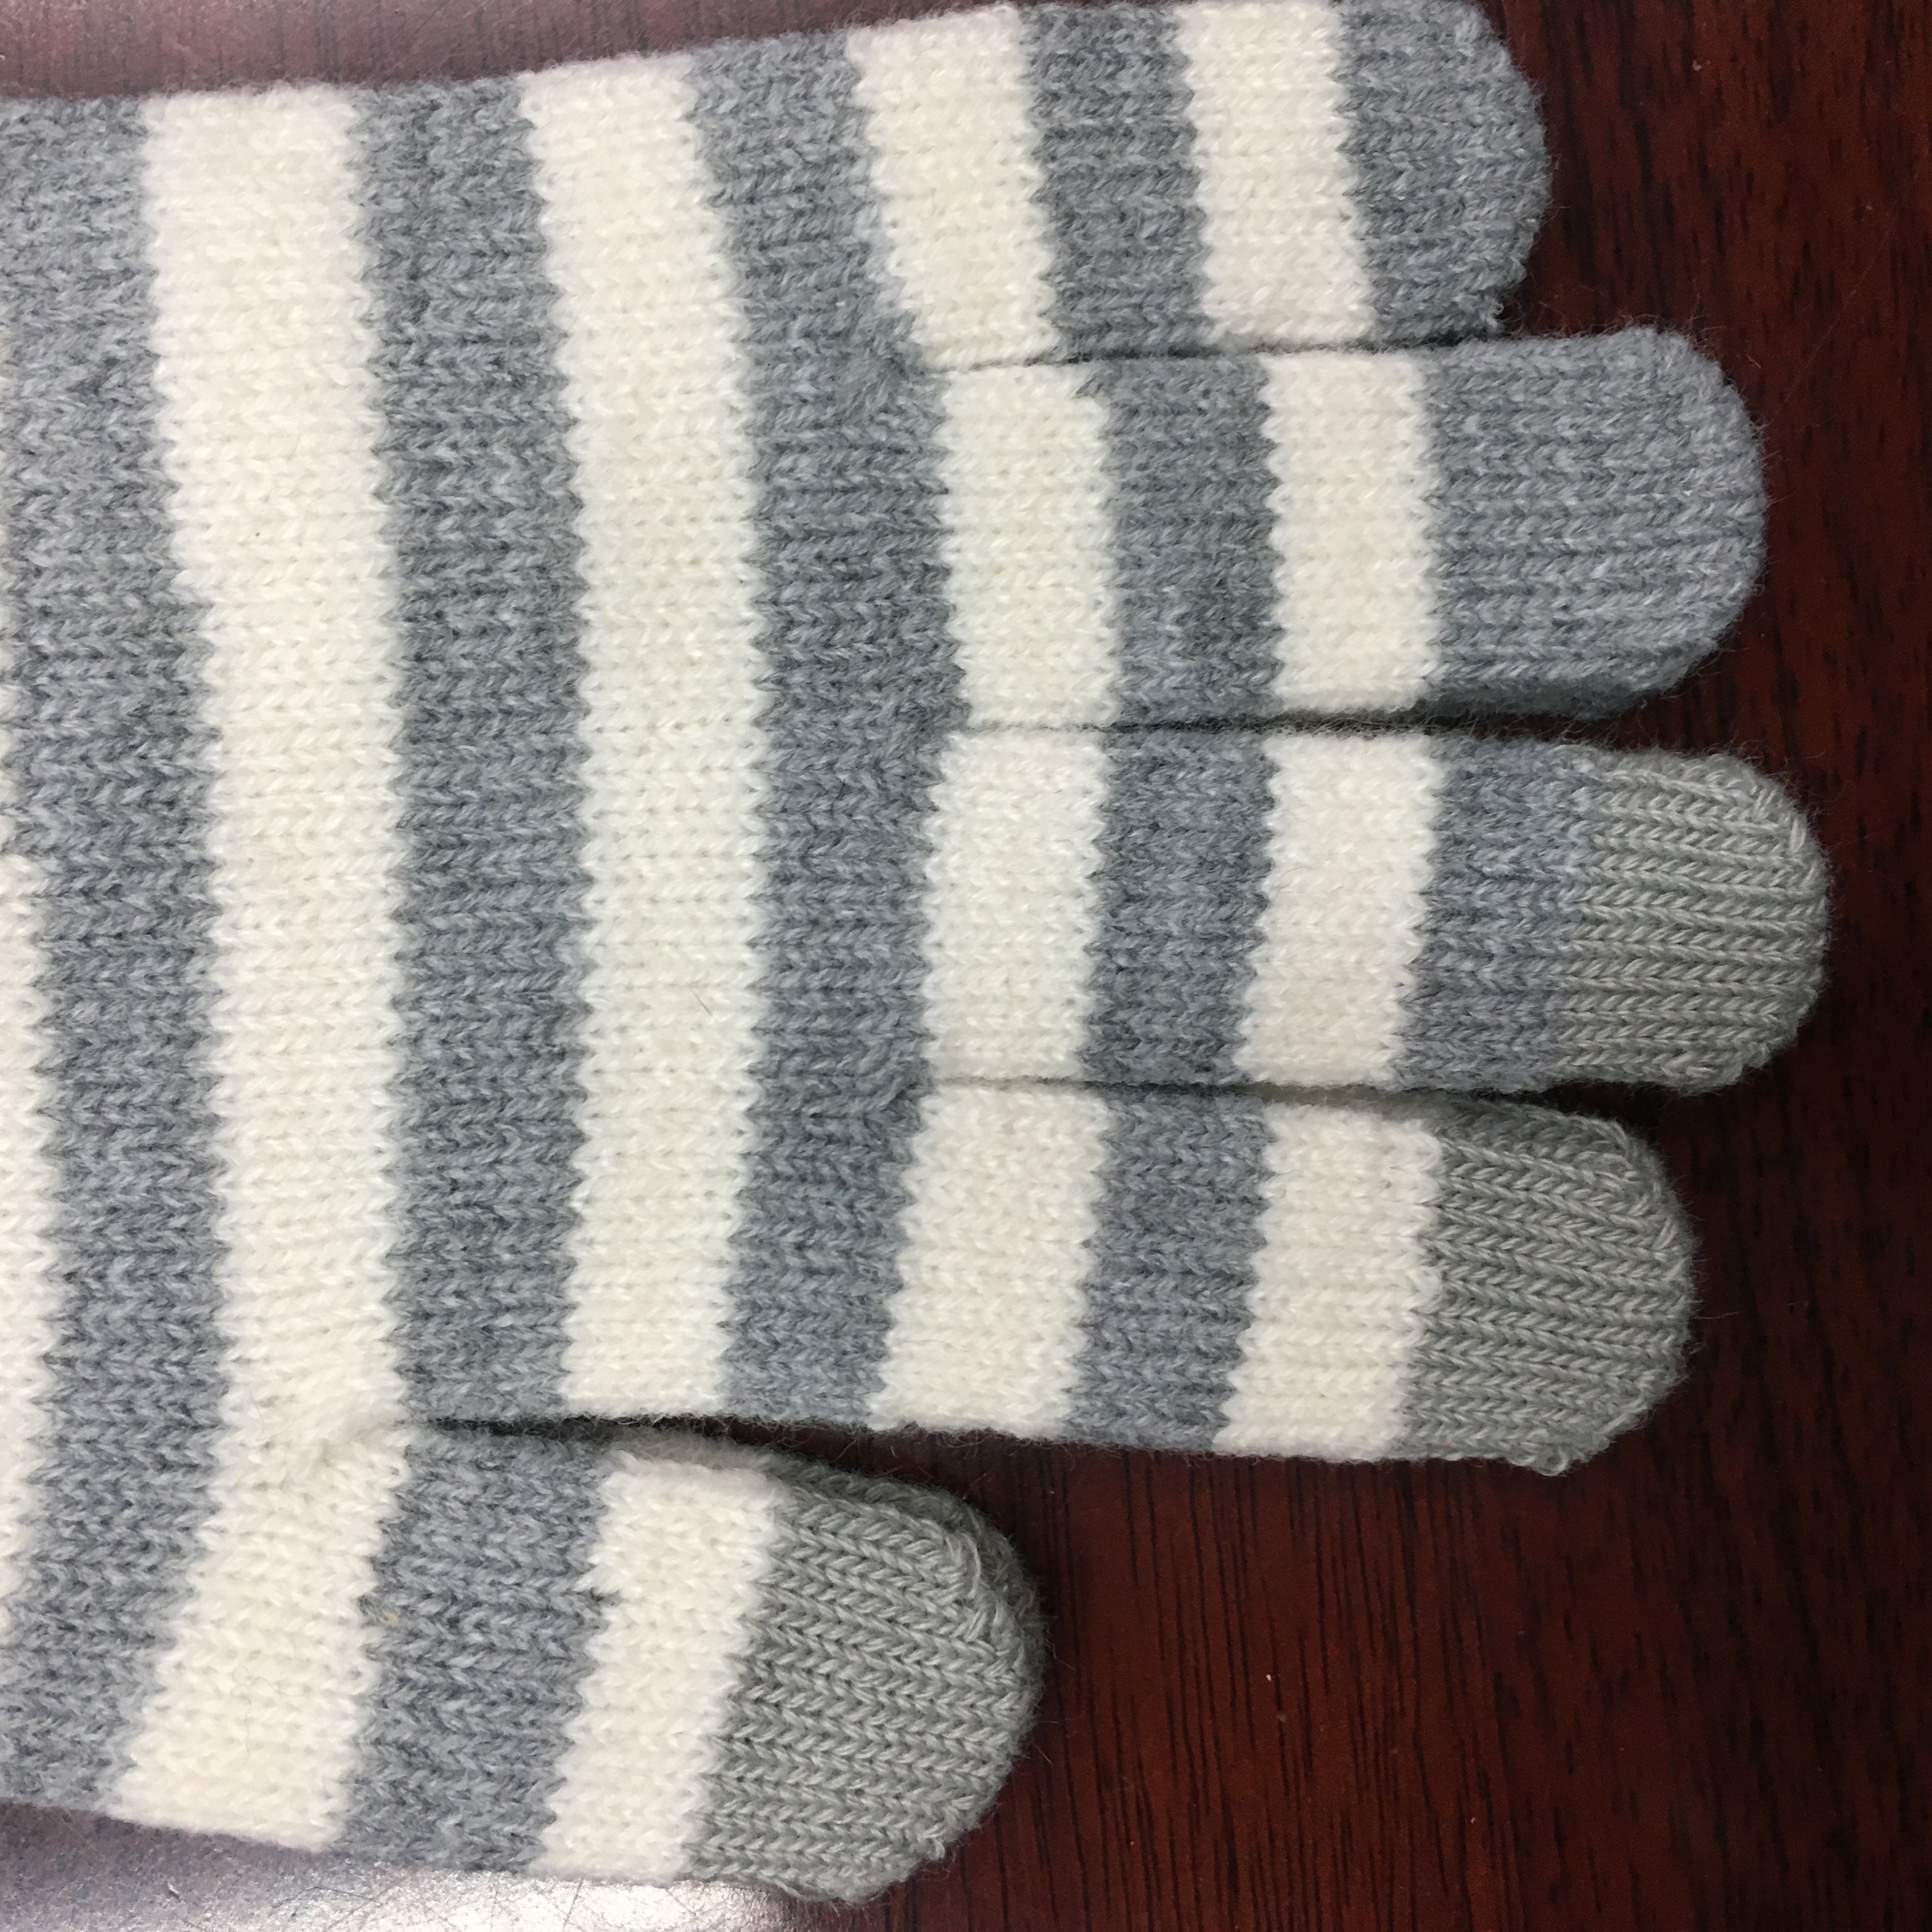 魔术手套户外运动手套触屏提手套花胶印手套冬季保暖针织毛线手套厂家产品图